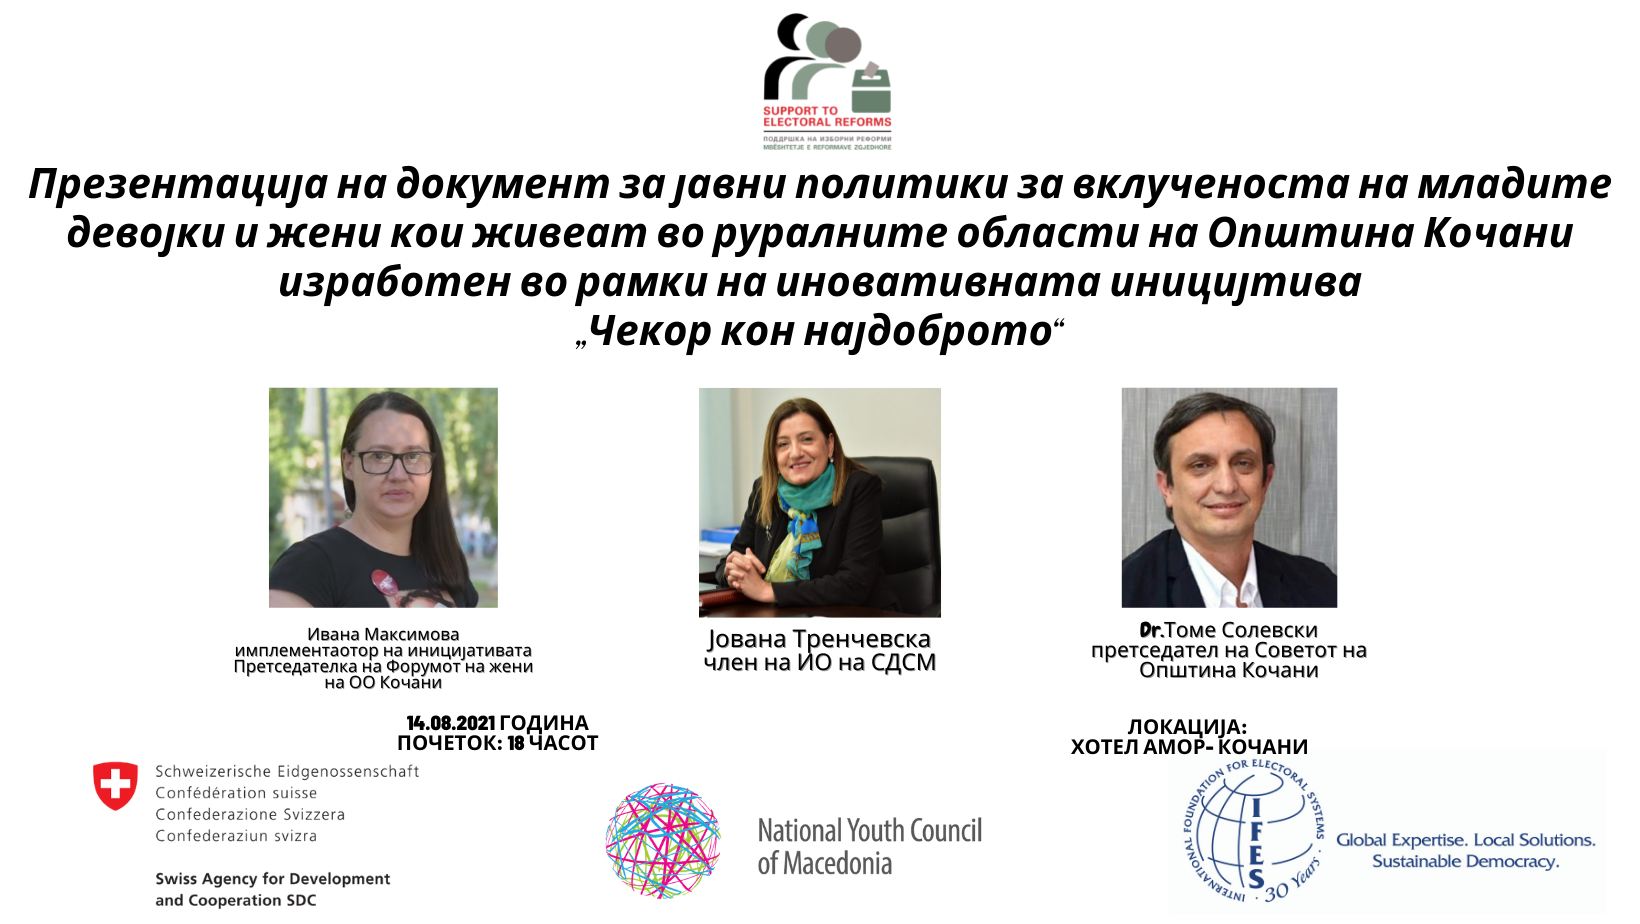 Promovimi i dokumentit “Pjesëmarrja aktive për rritjen e pavarësisë ekonomike të grave në zonat rurale të komunës së Koçanit”